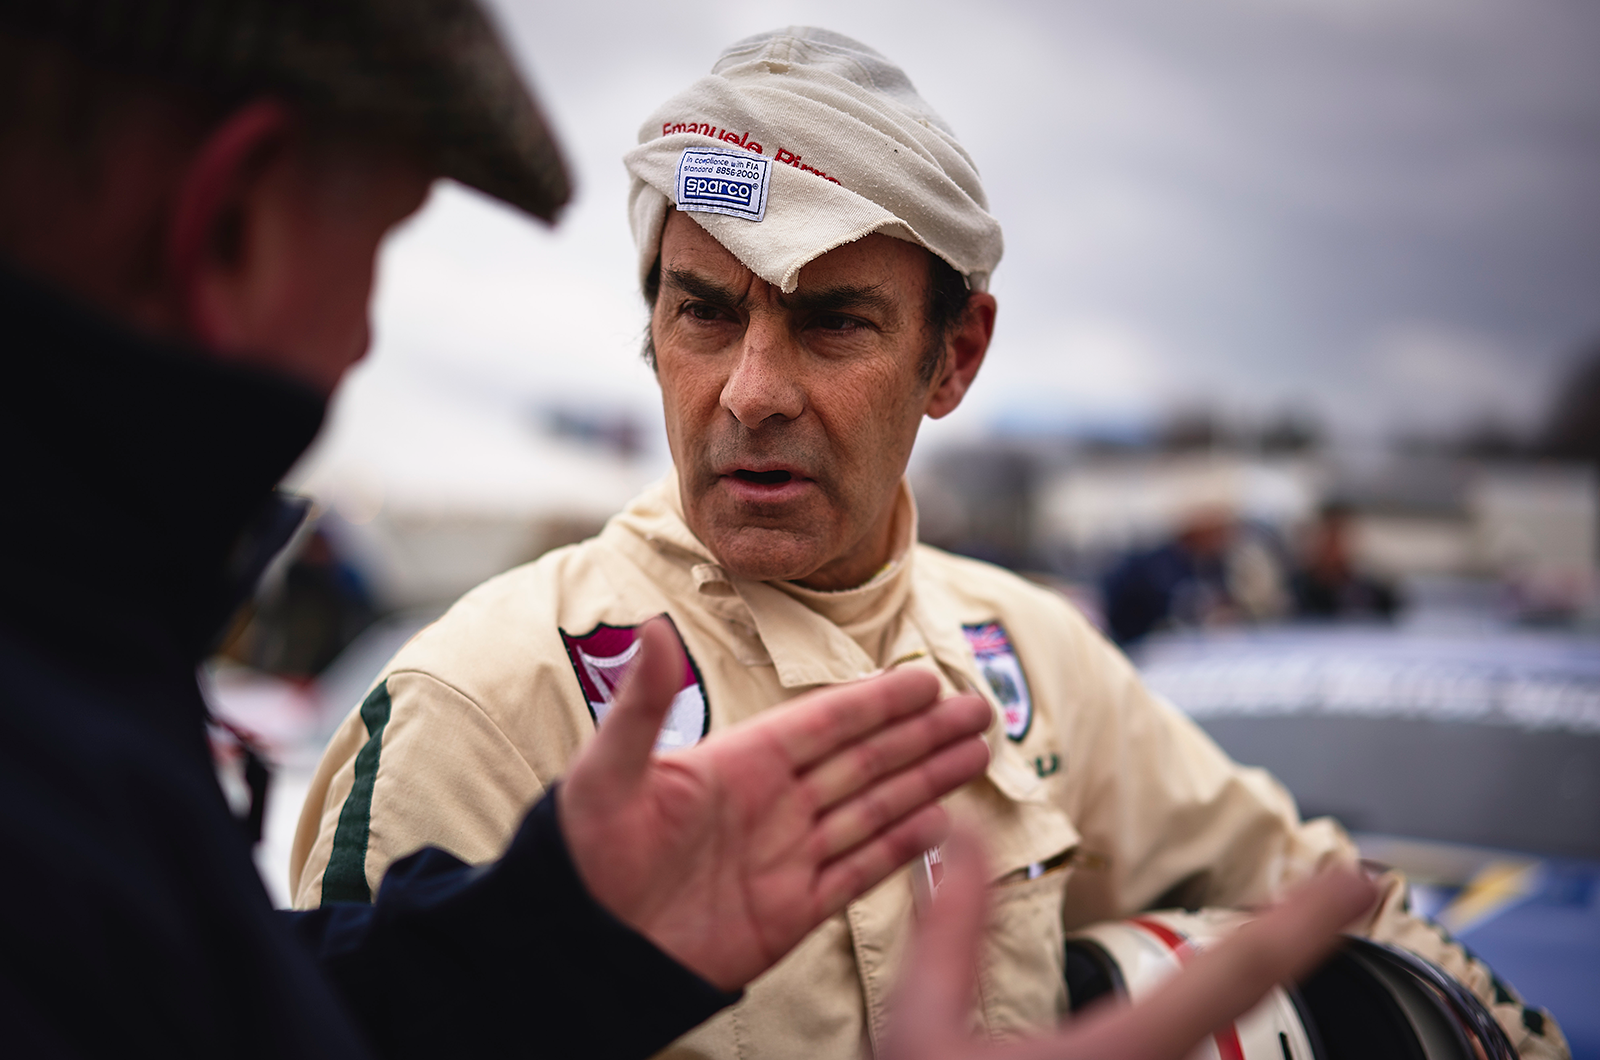 Le Mans legends lead Goodwood Revival driver line-up